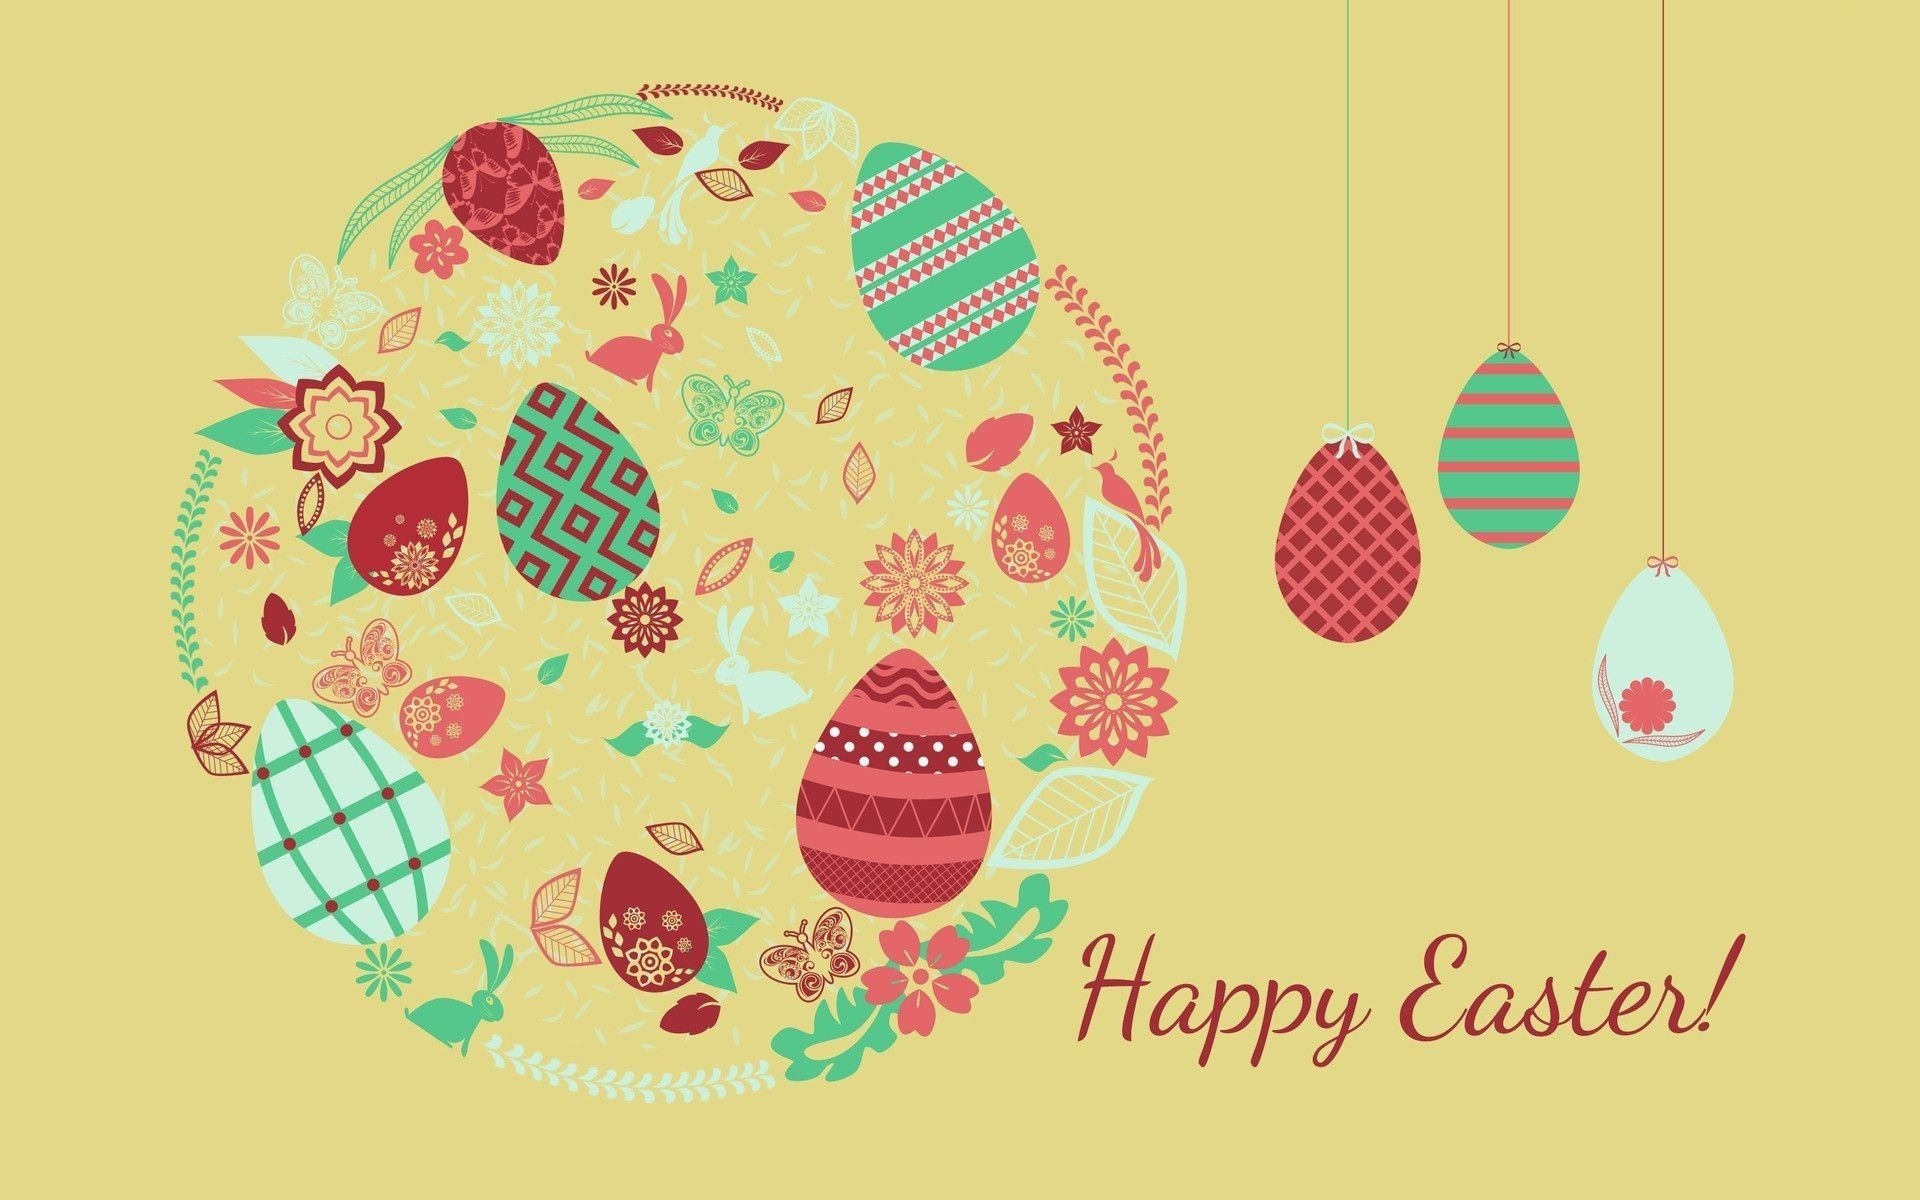 Happy Easter Hd Wallpaper - Happy Easter - HD Wallpaper 